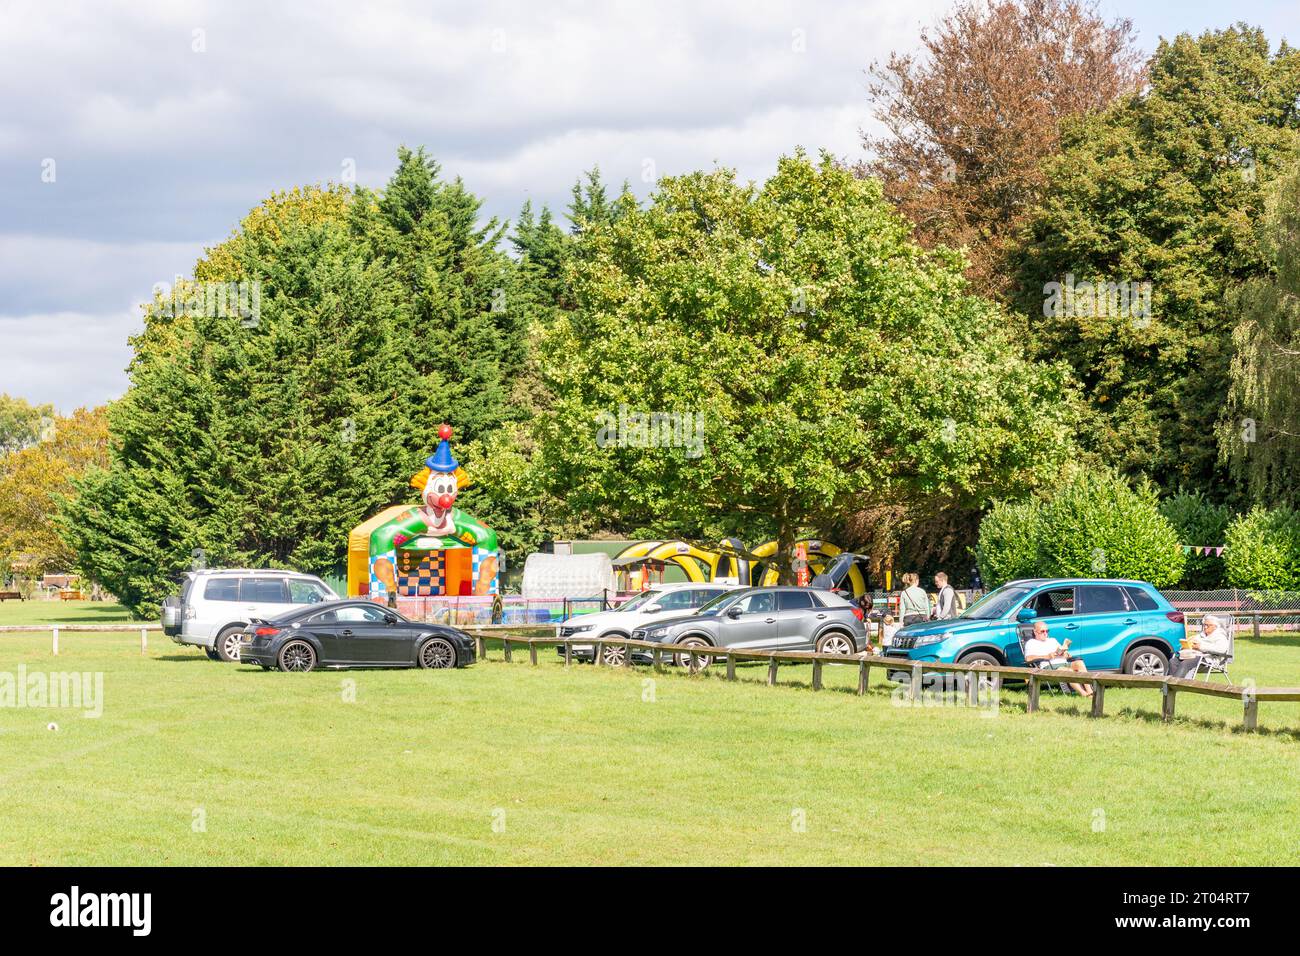 Aire de jeux pour enfants, Runnymede Pleasure Ground, Runnymede, Surrey, Angleterre, Royaume-Uni Banque D'Images